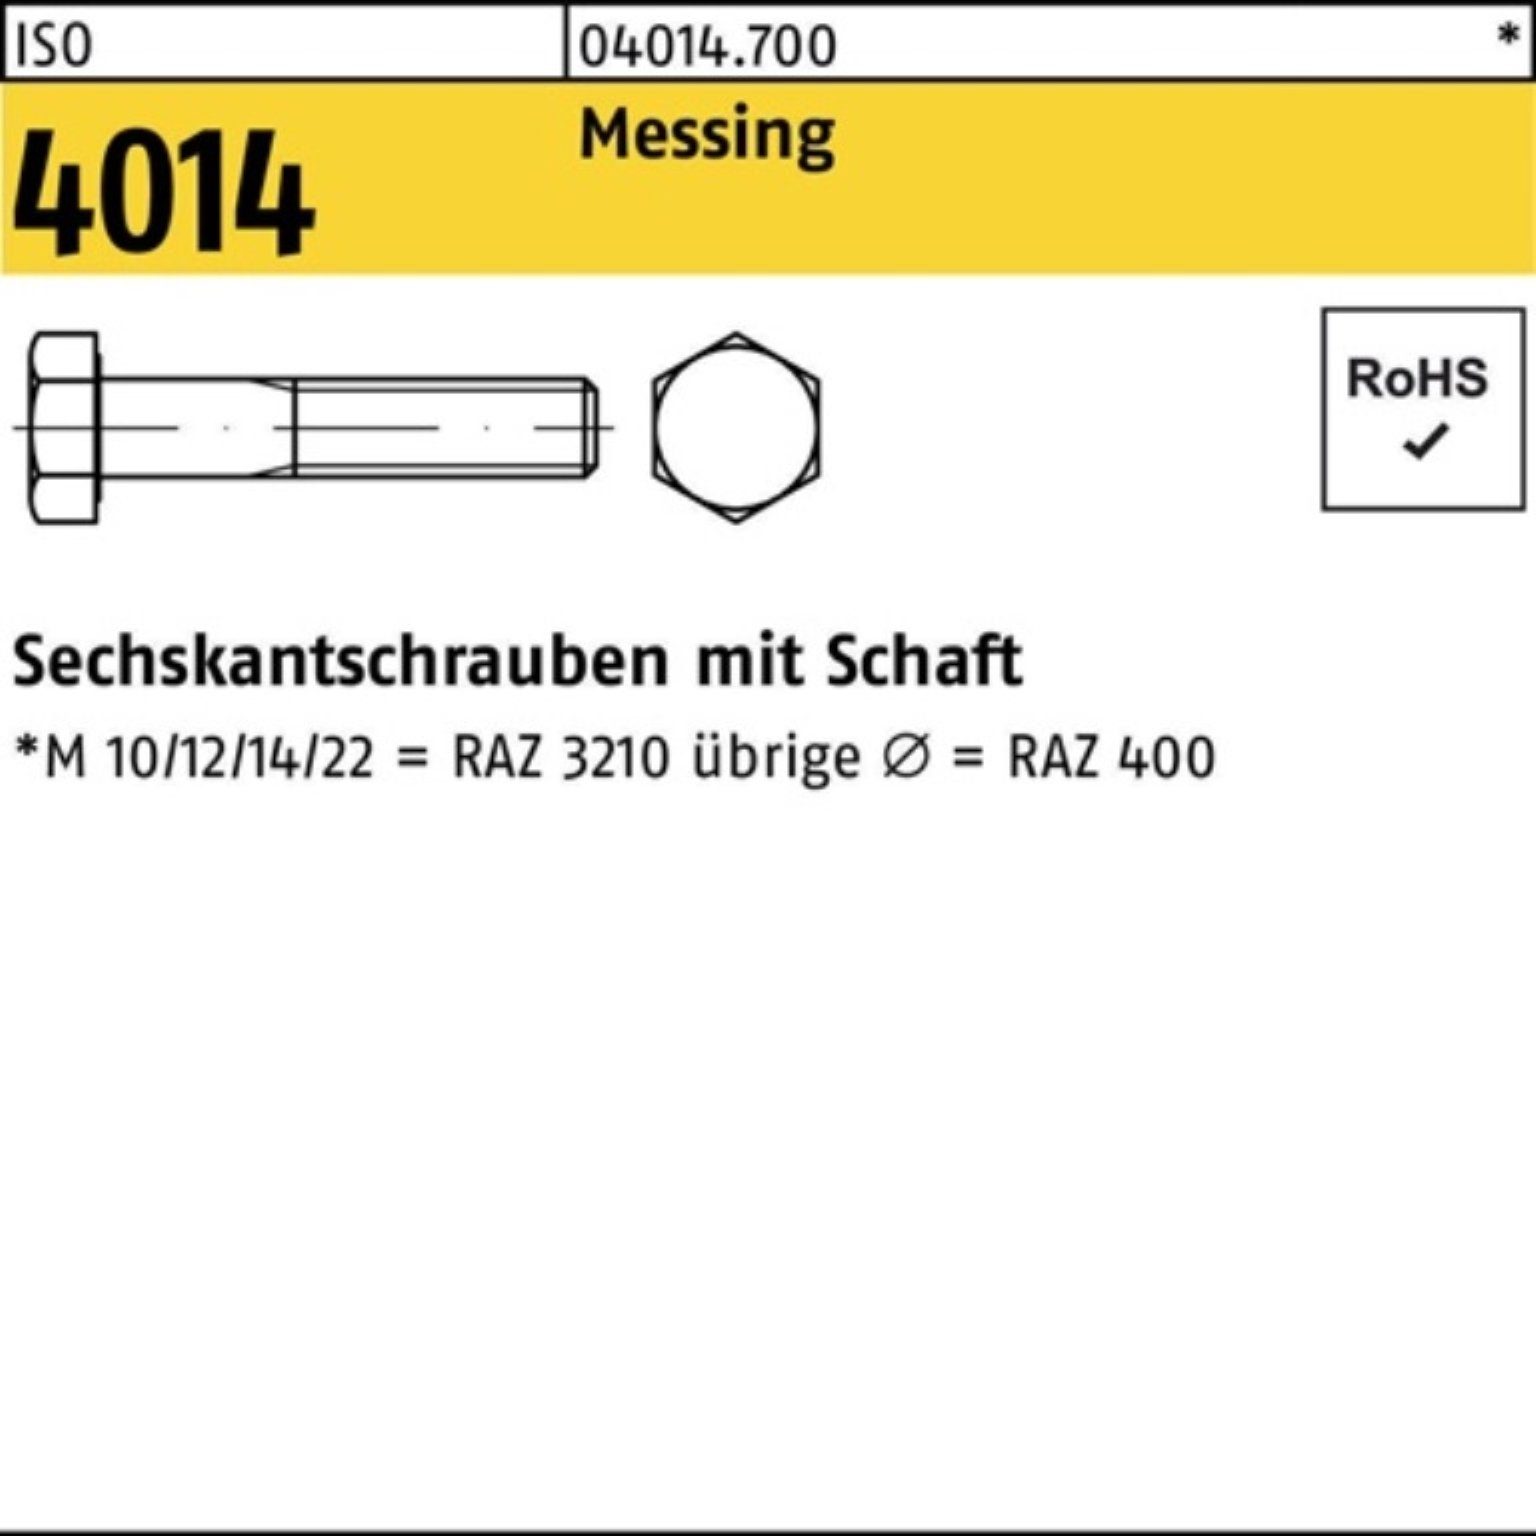 Schaft M8x Bufab 100 Sechskantschraube 4014 Messing ISO Sechskantschraube Pack Stück 100er 50